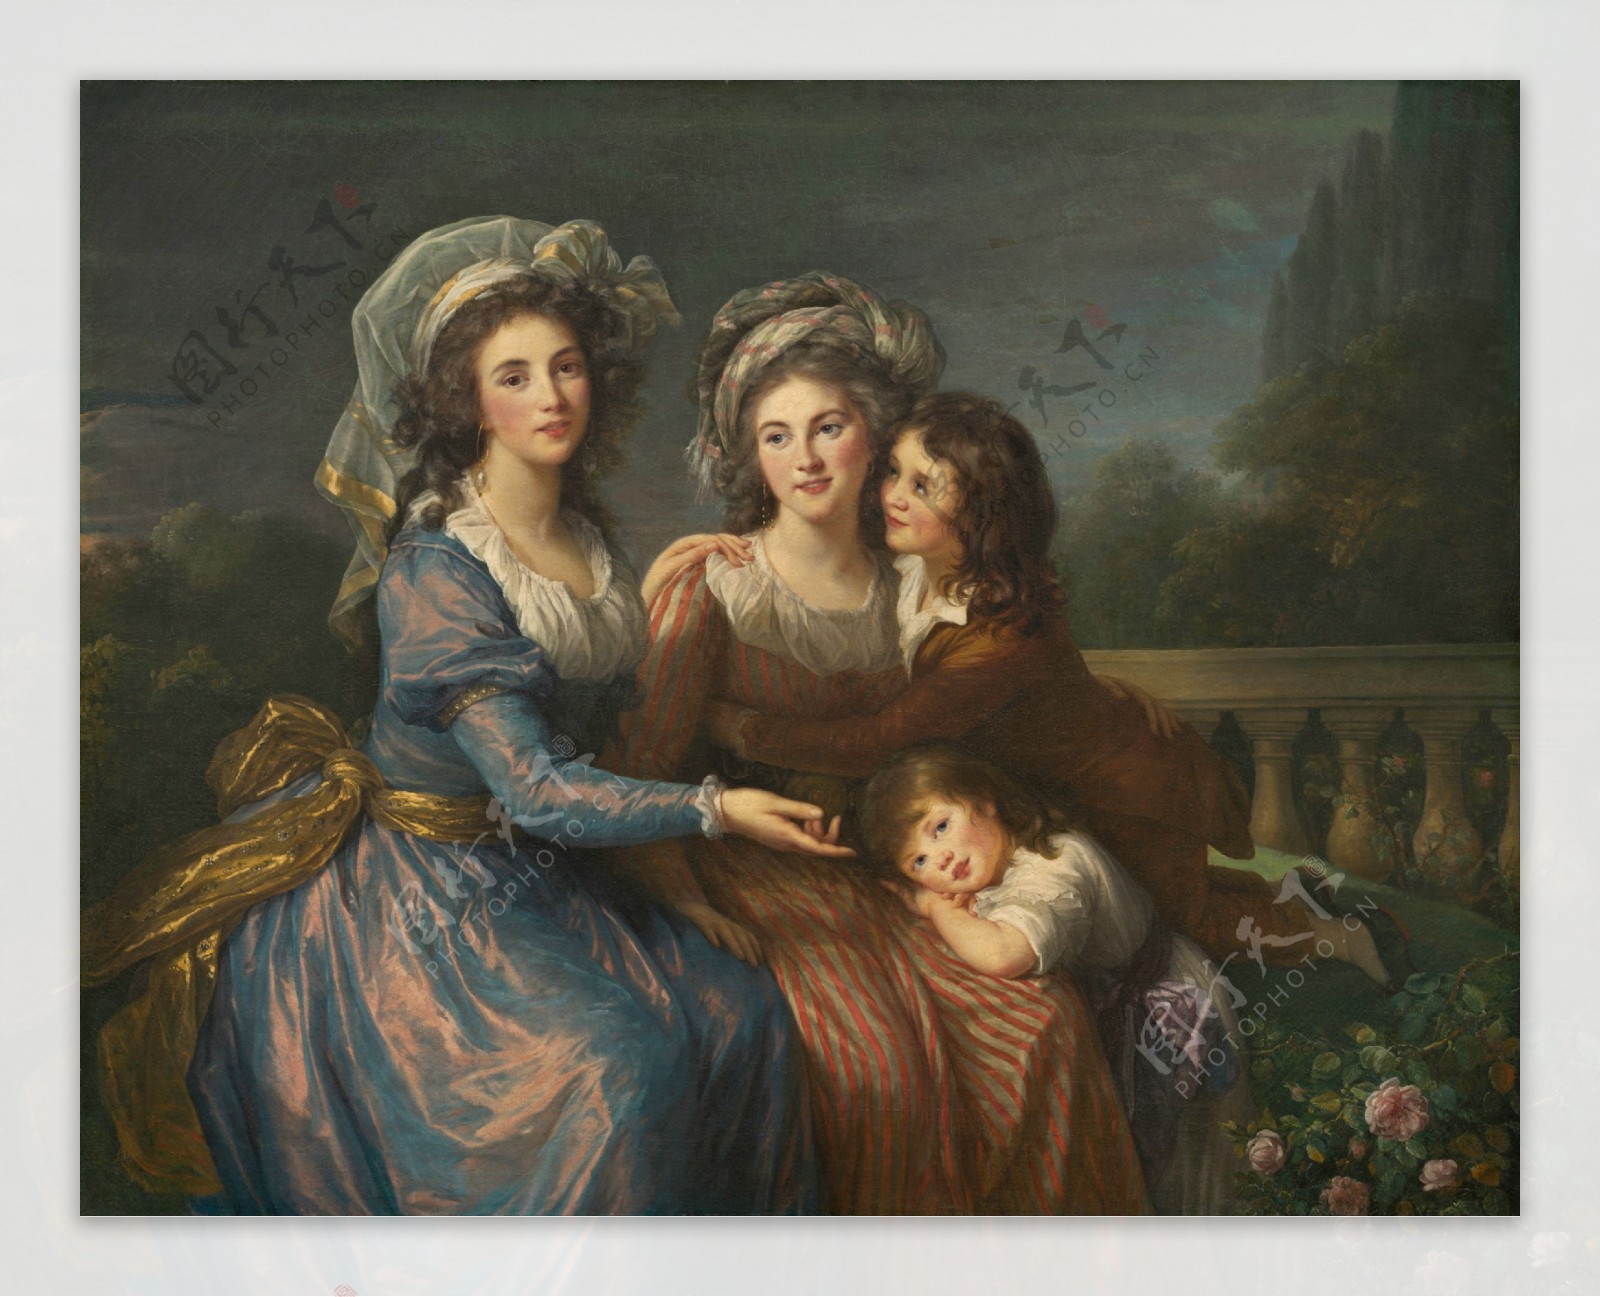 候爵夫人与两个儿子亚历克和阿德里安在一起图片